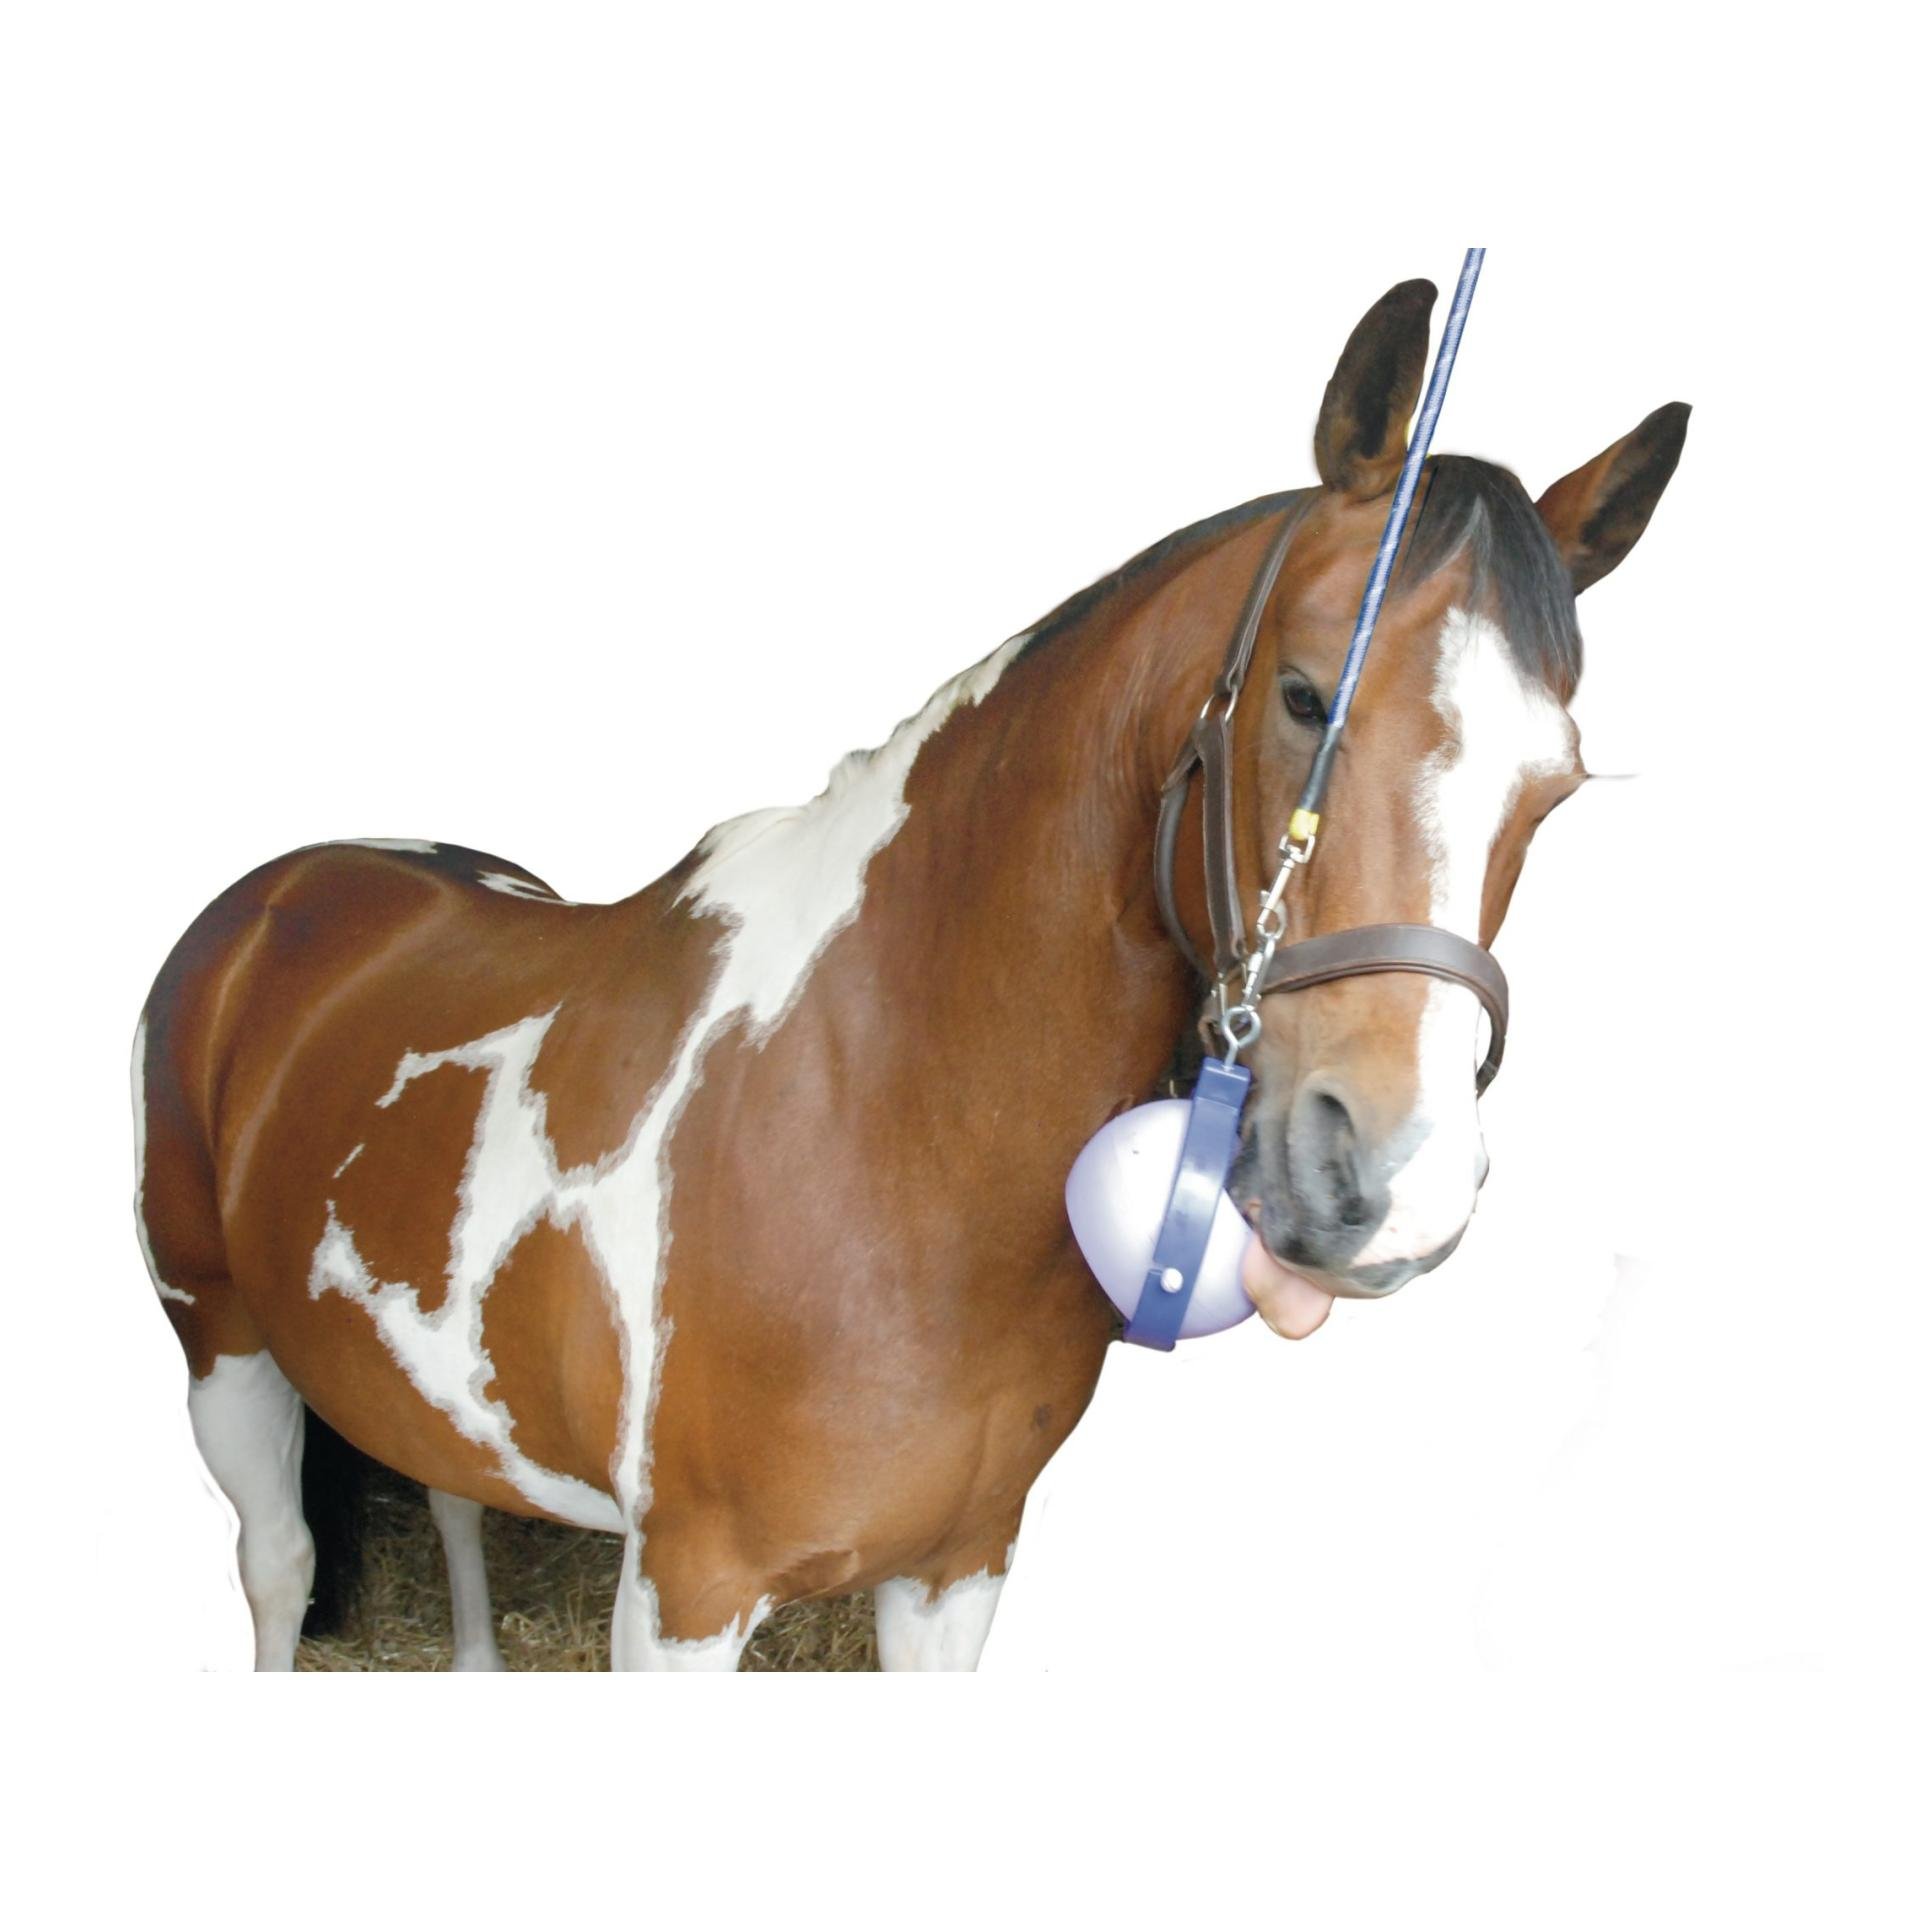 Friandise cheval : plaisir, éducation, équitation - Cochon